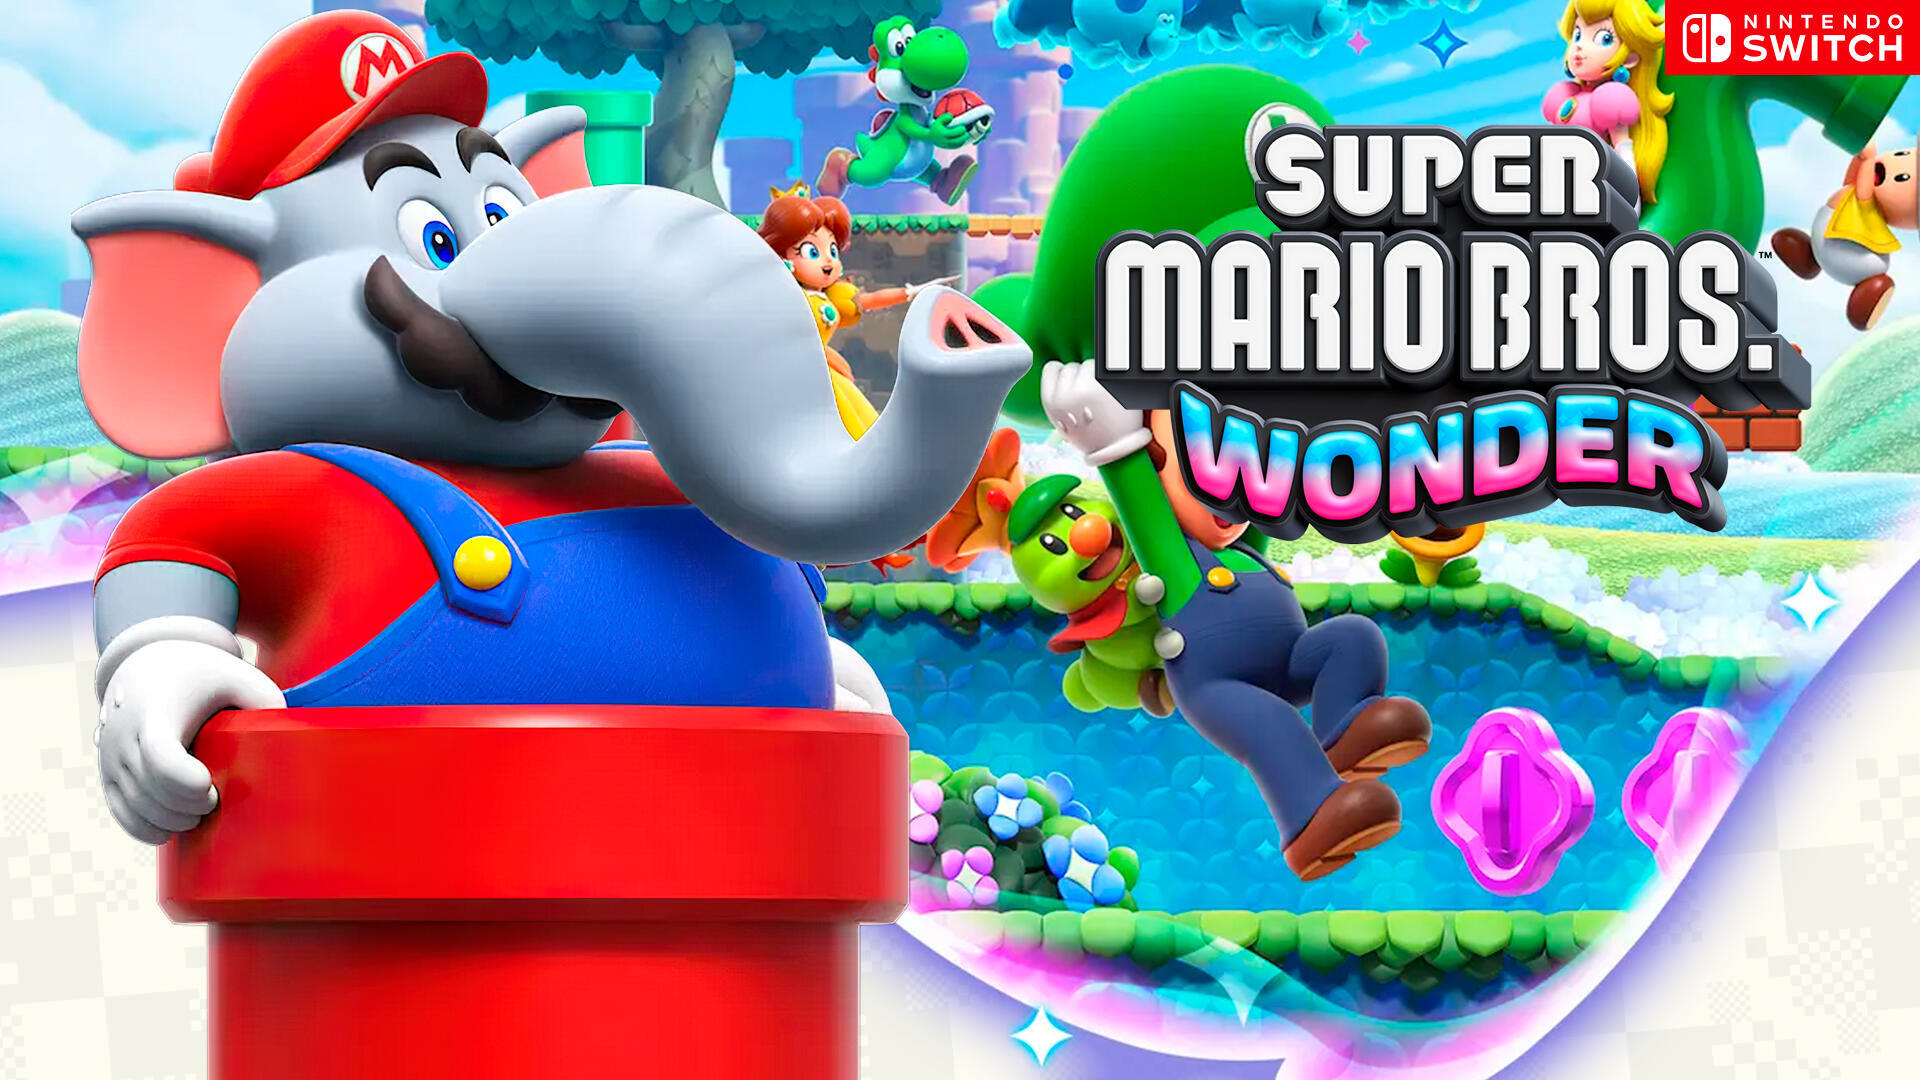 Impresiones finales de Super Mario Bros. Wonder - El regreso de Mario que  te volará la cabeza